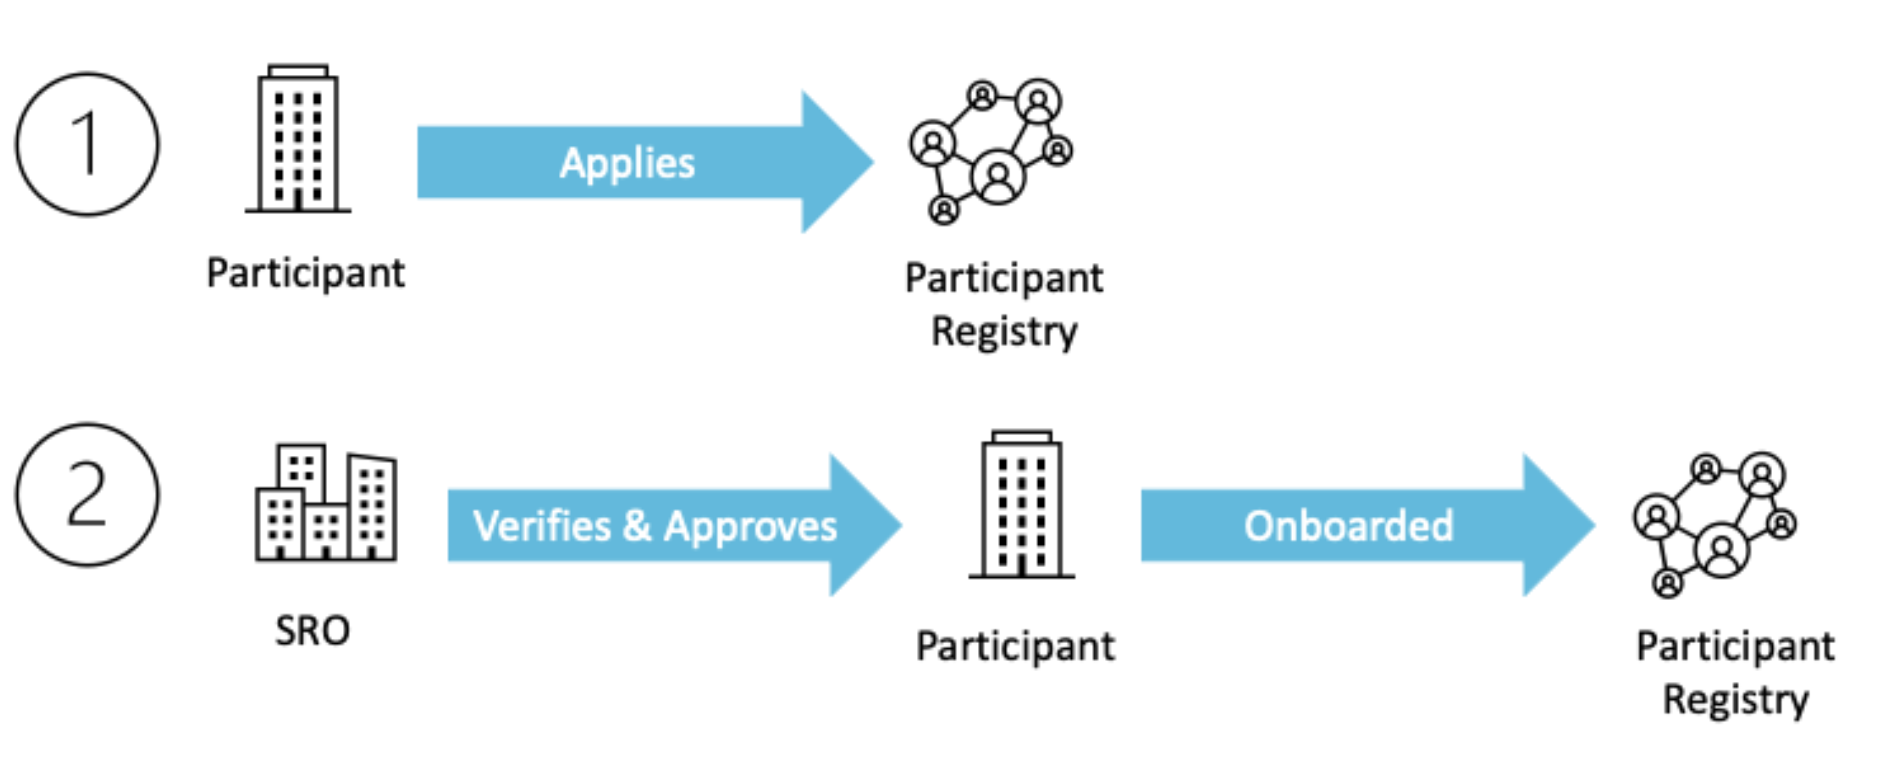 Participant Registry